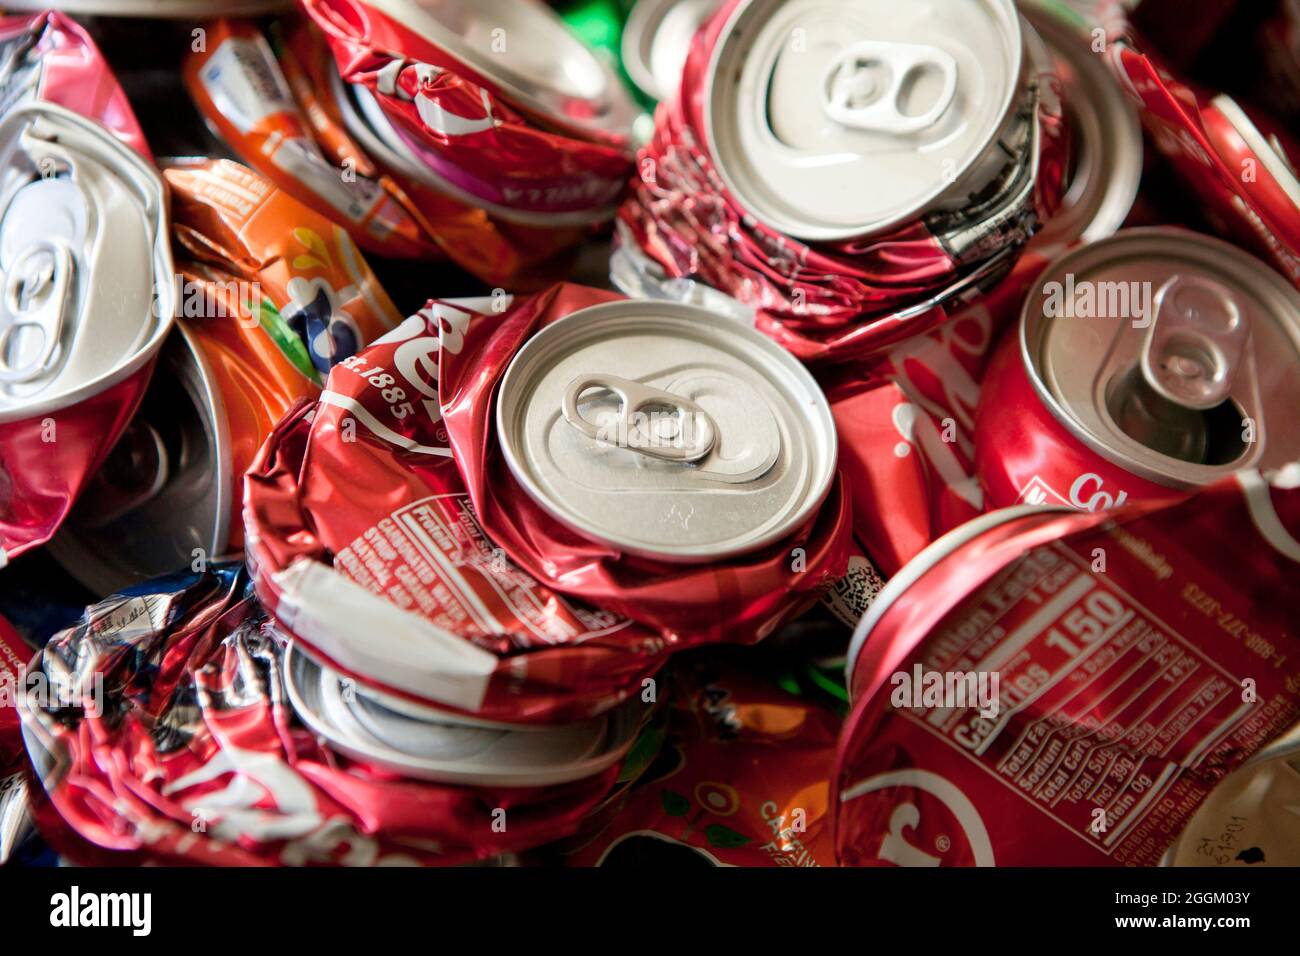 Canettes de soda en aluminium concassées pour recyclage - Etats-Unis Banque D'Images